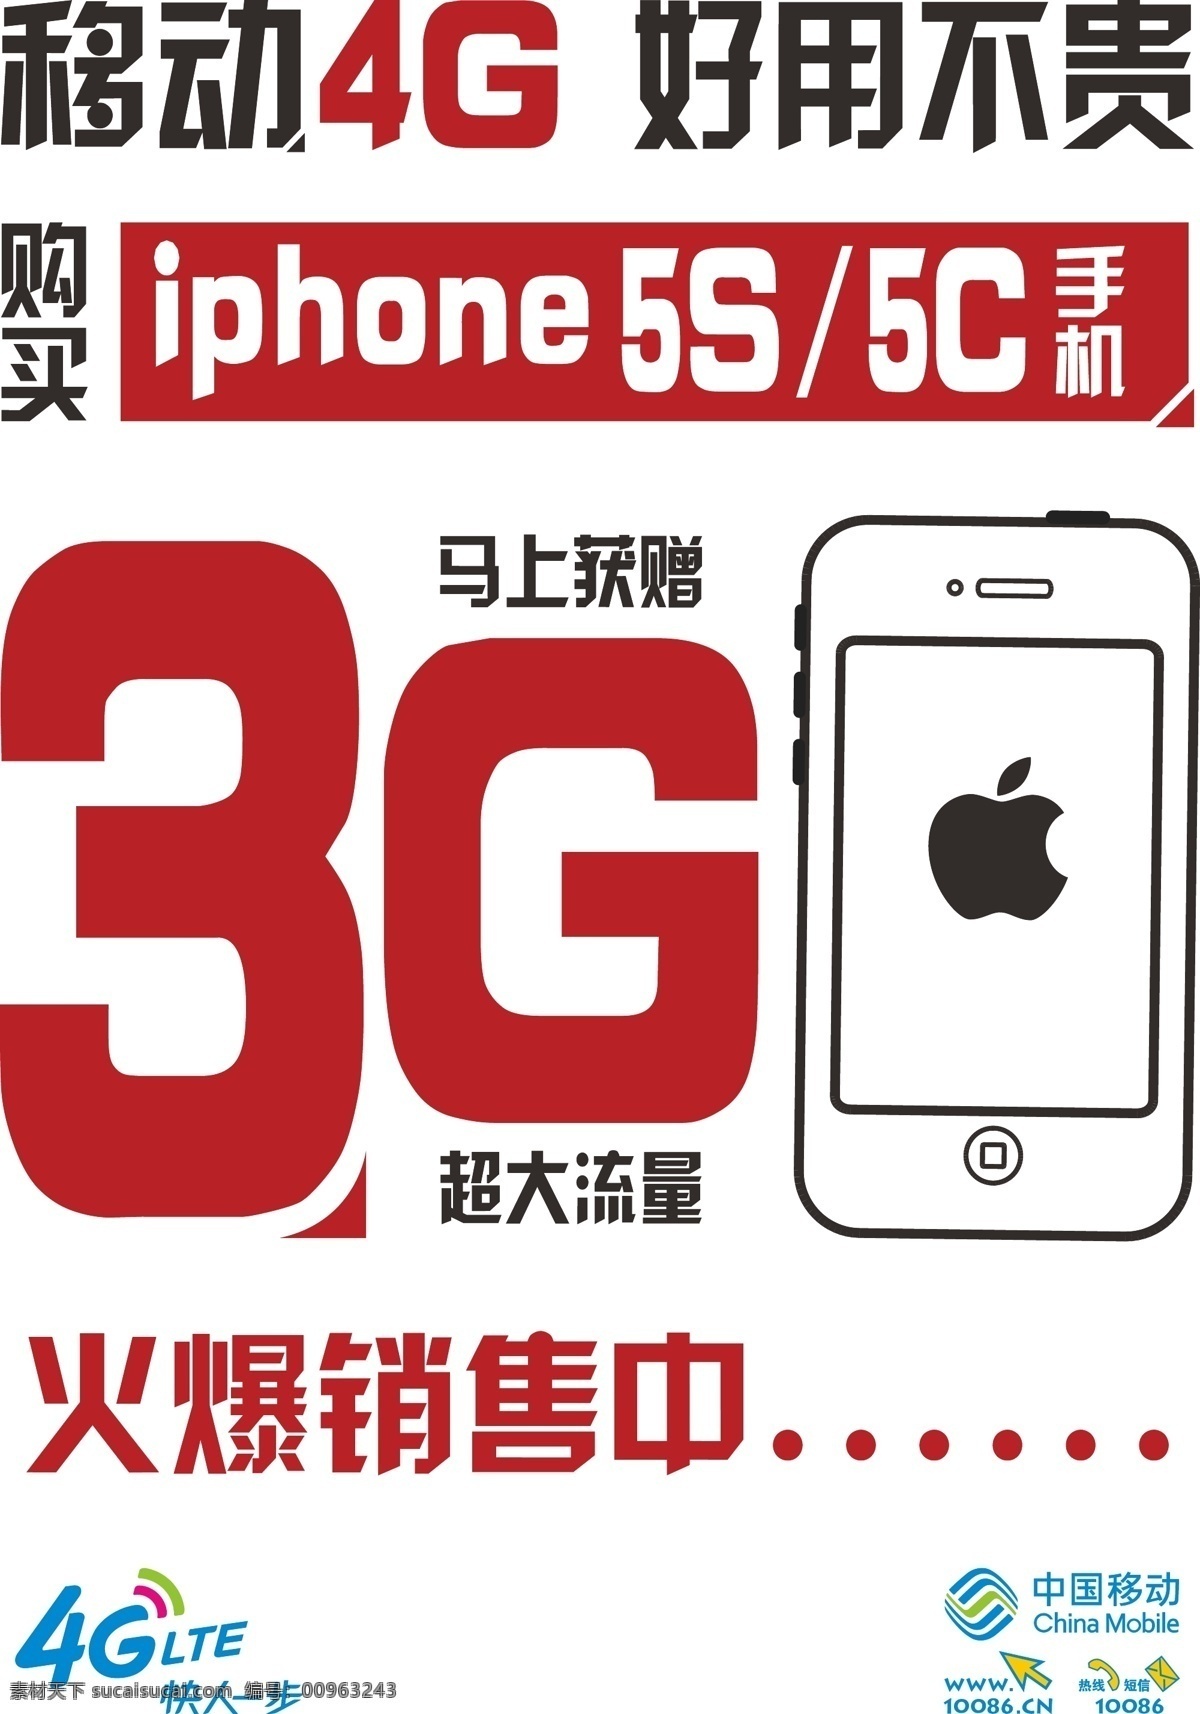 中国移动 苹果 手机 大字报 苹果手机 原创设计 原创海报